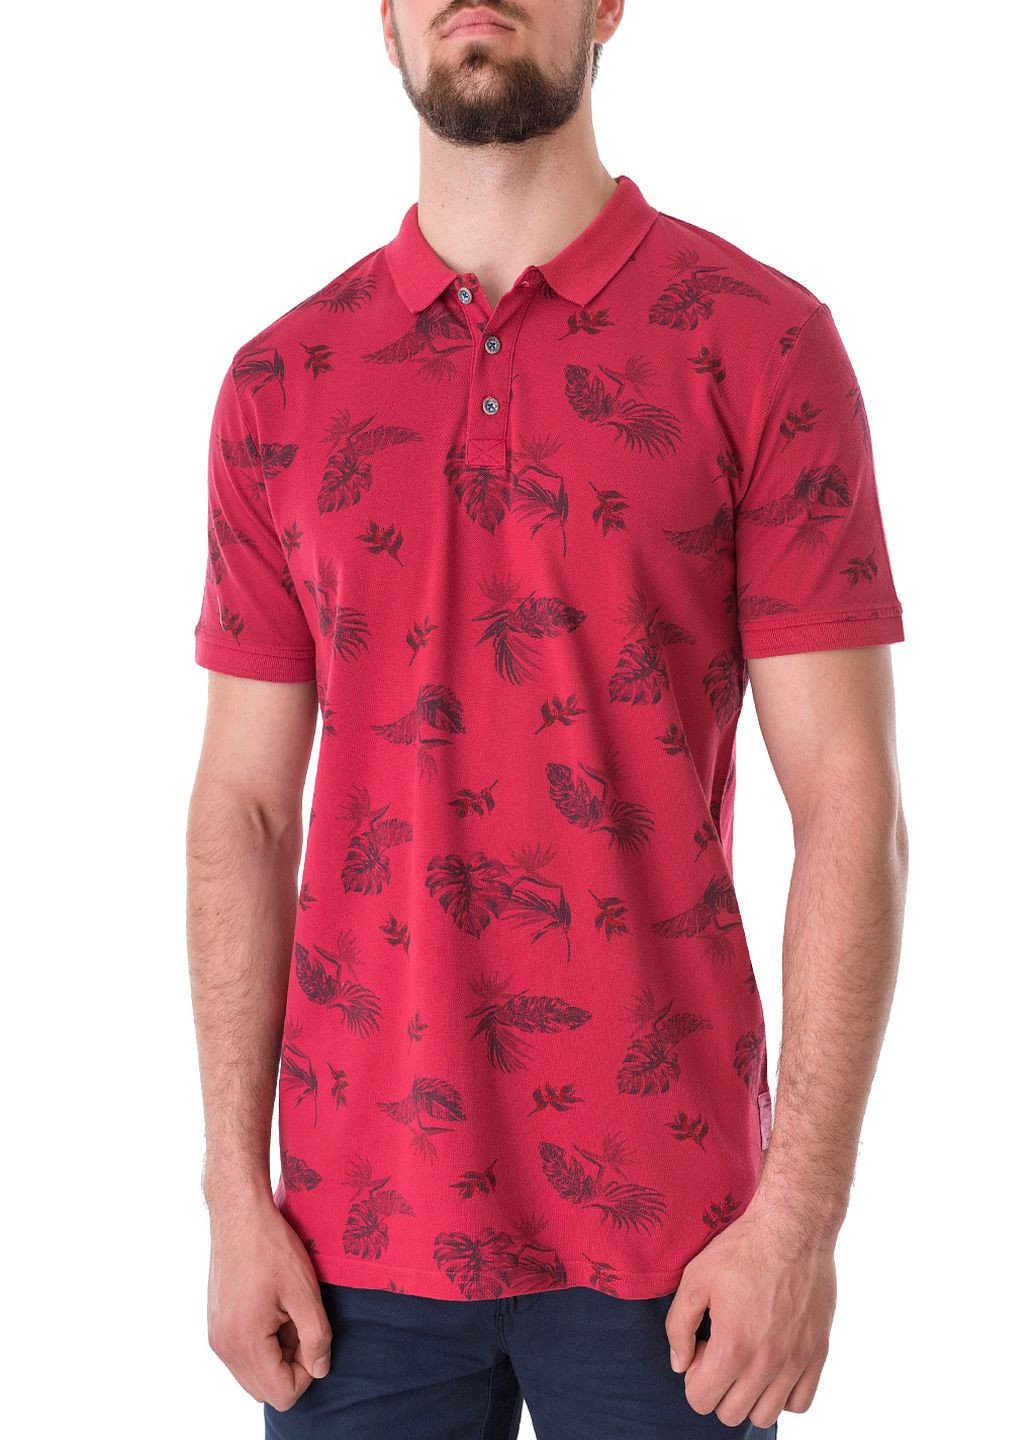 Красная футболка-поло для мужчин Basefield с цветочным принтом